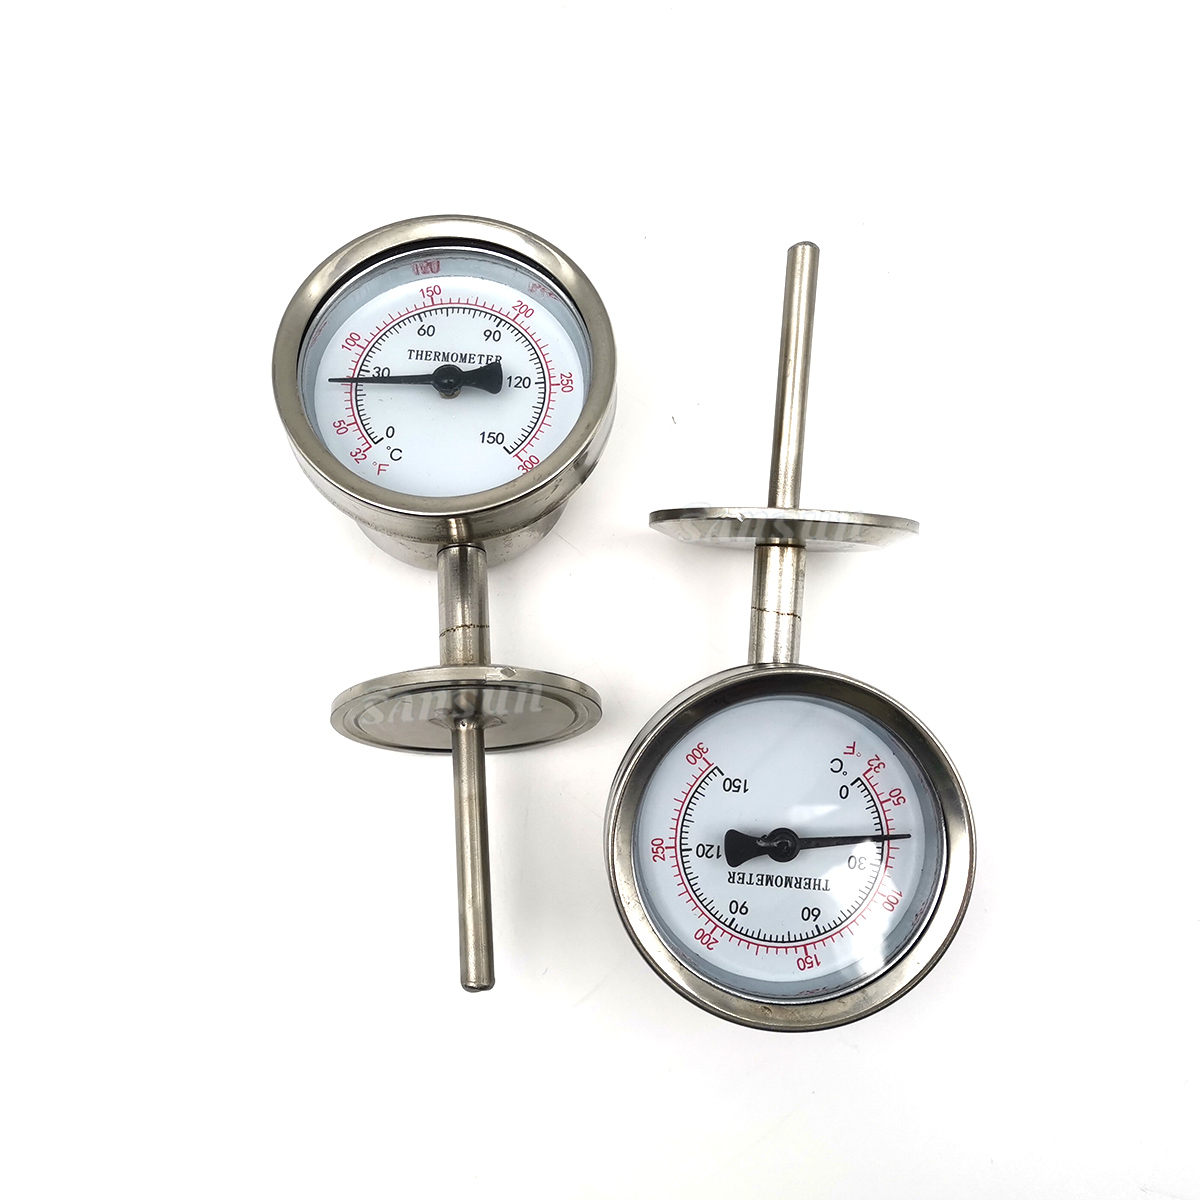 Биметальный термометр температуры вертикального типа из нержавеющей стали.